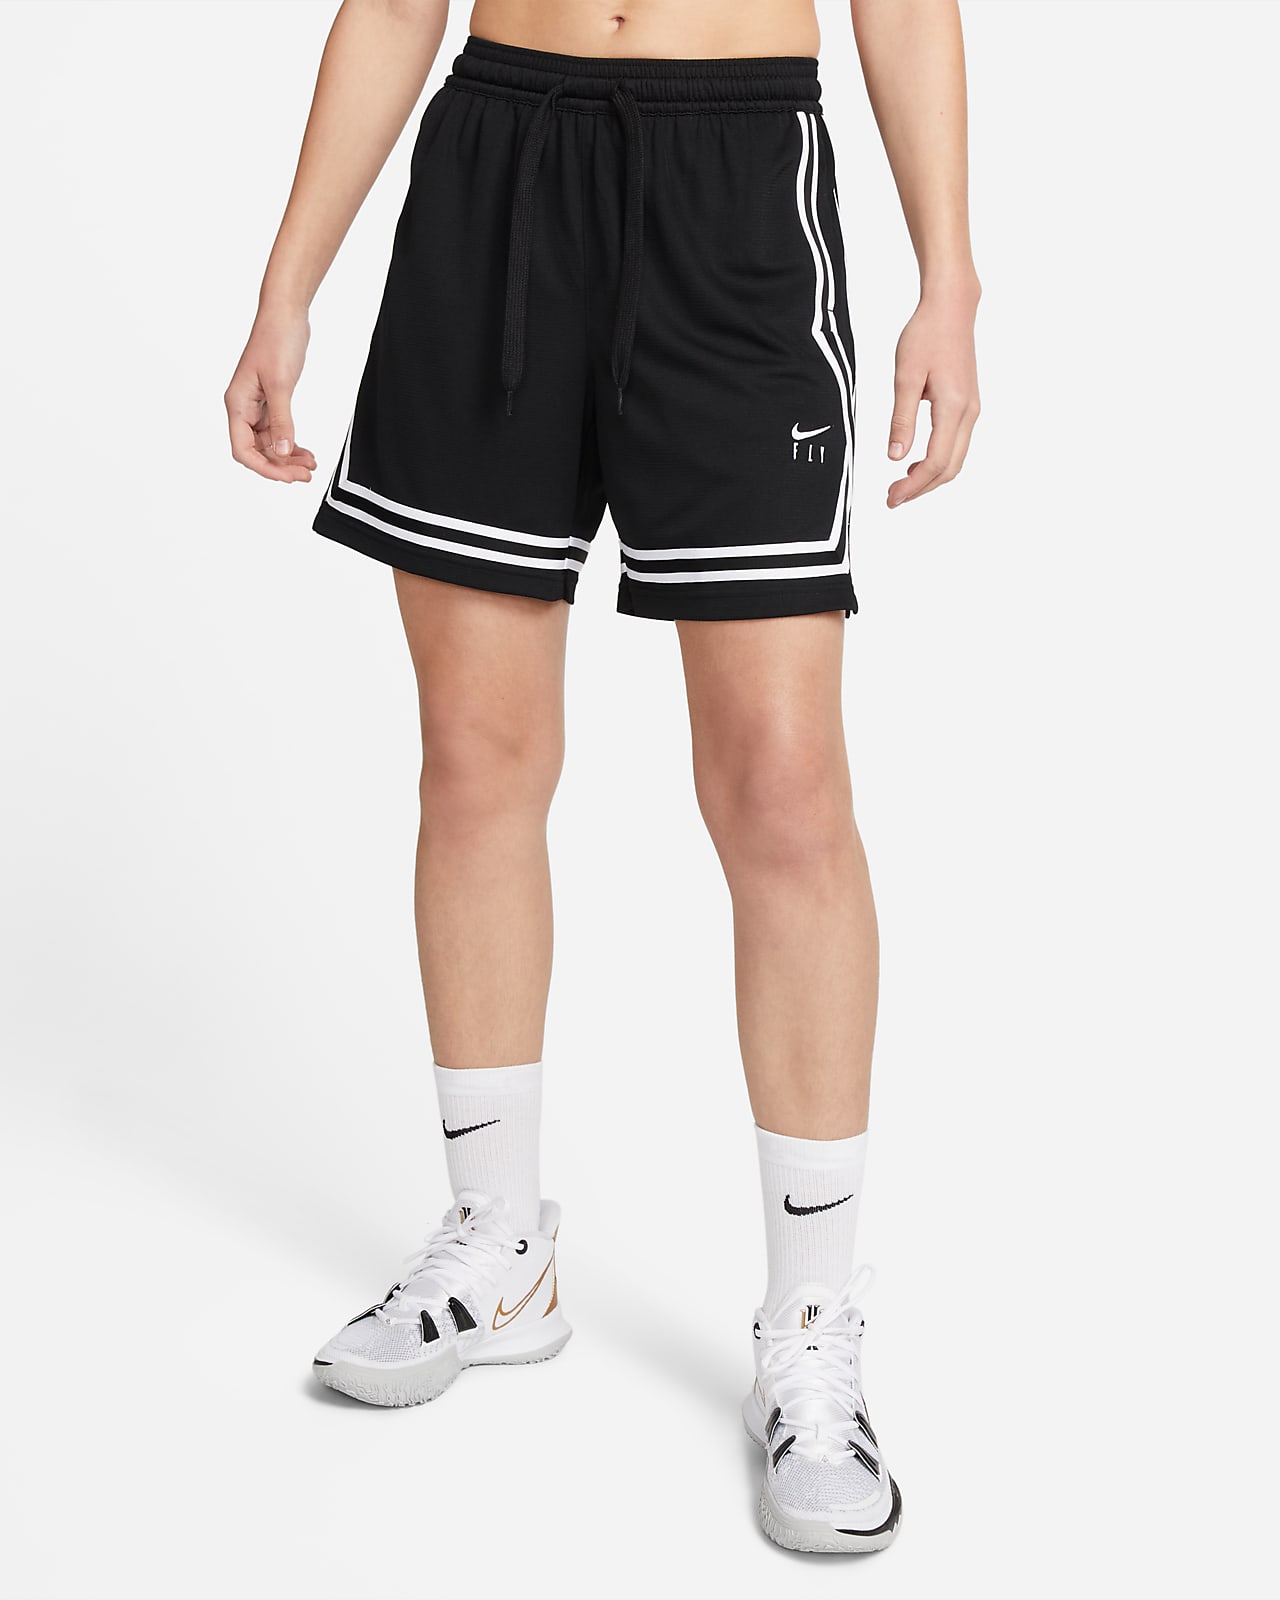 Γυναικείο σορτς μπάσκετ Nike Fly Crossover